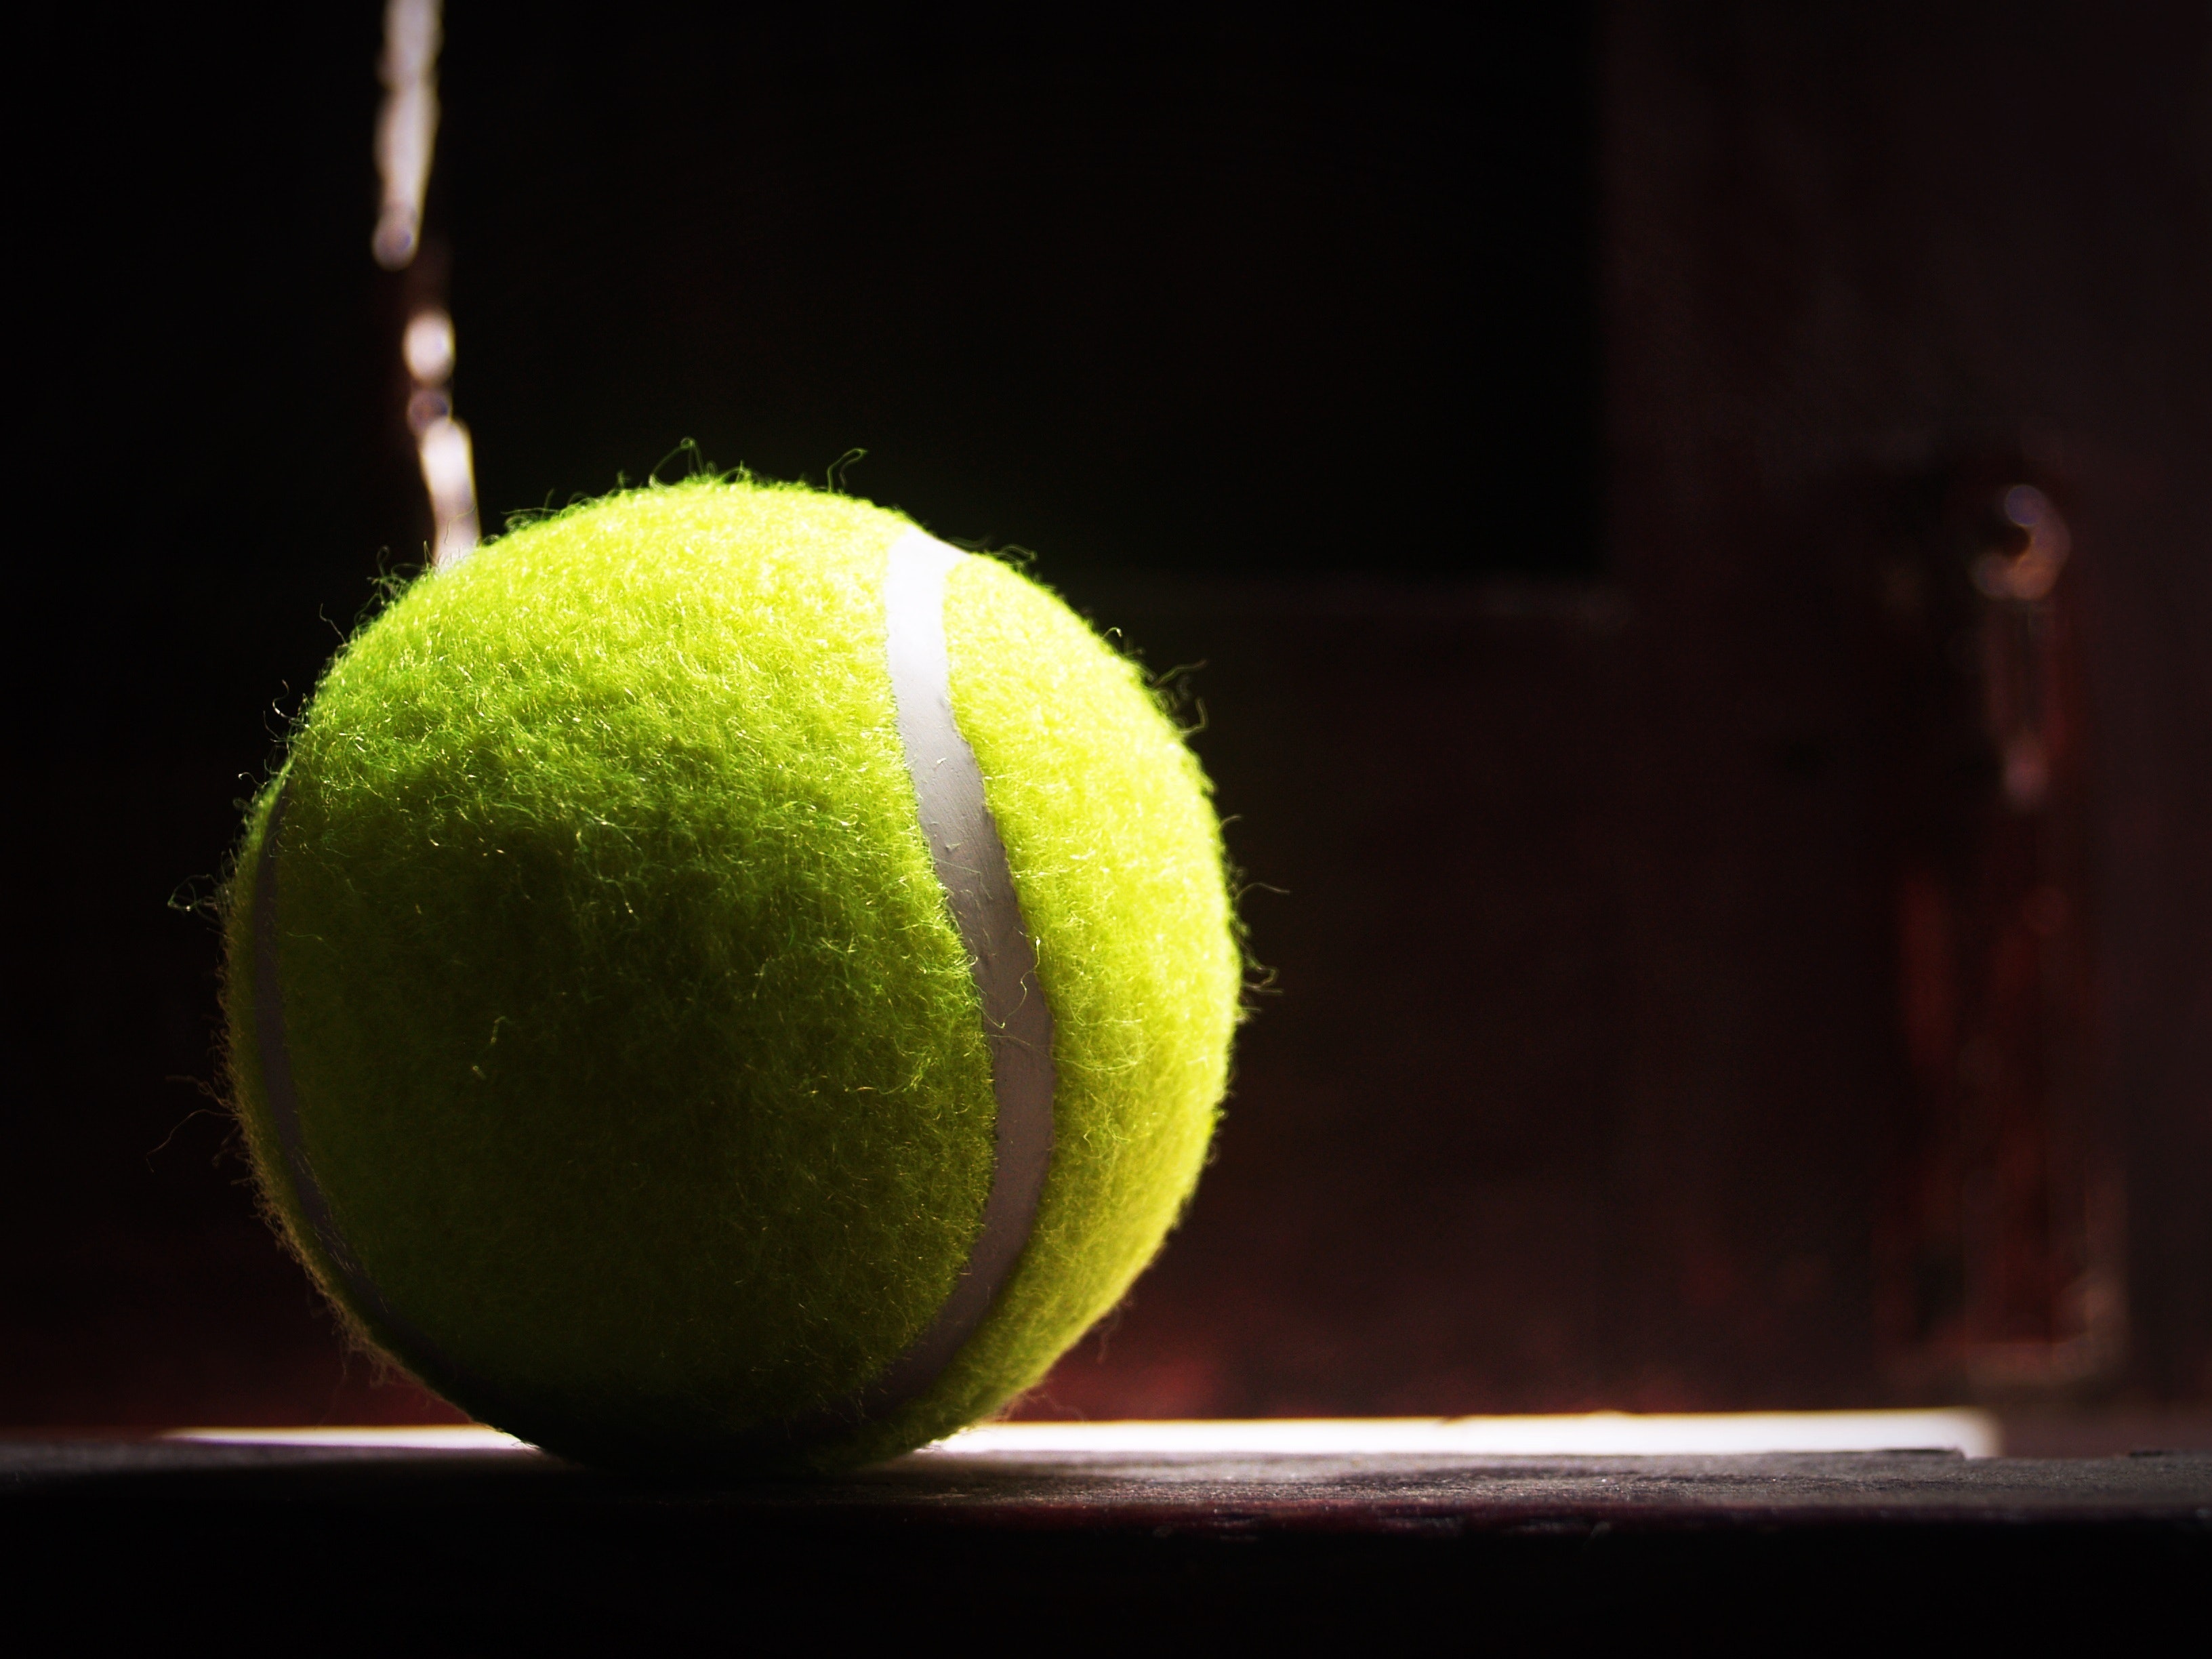 Eurecat dona una segona vida a les pilotes de tennis